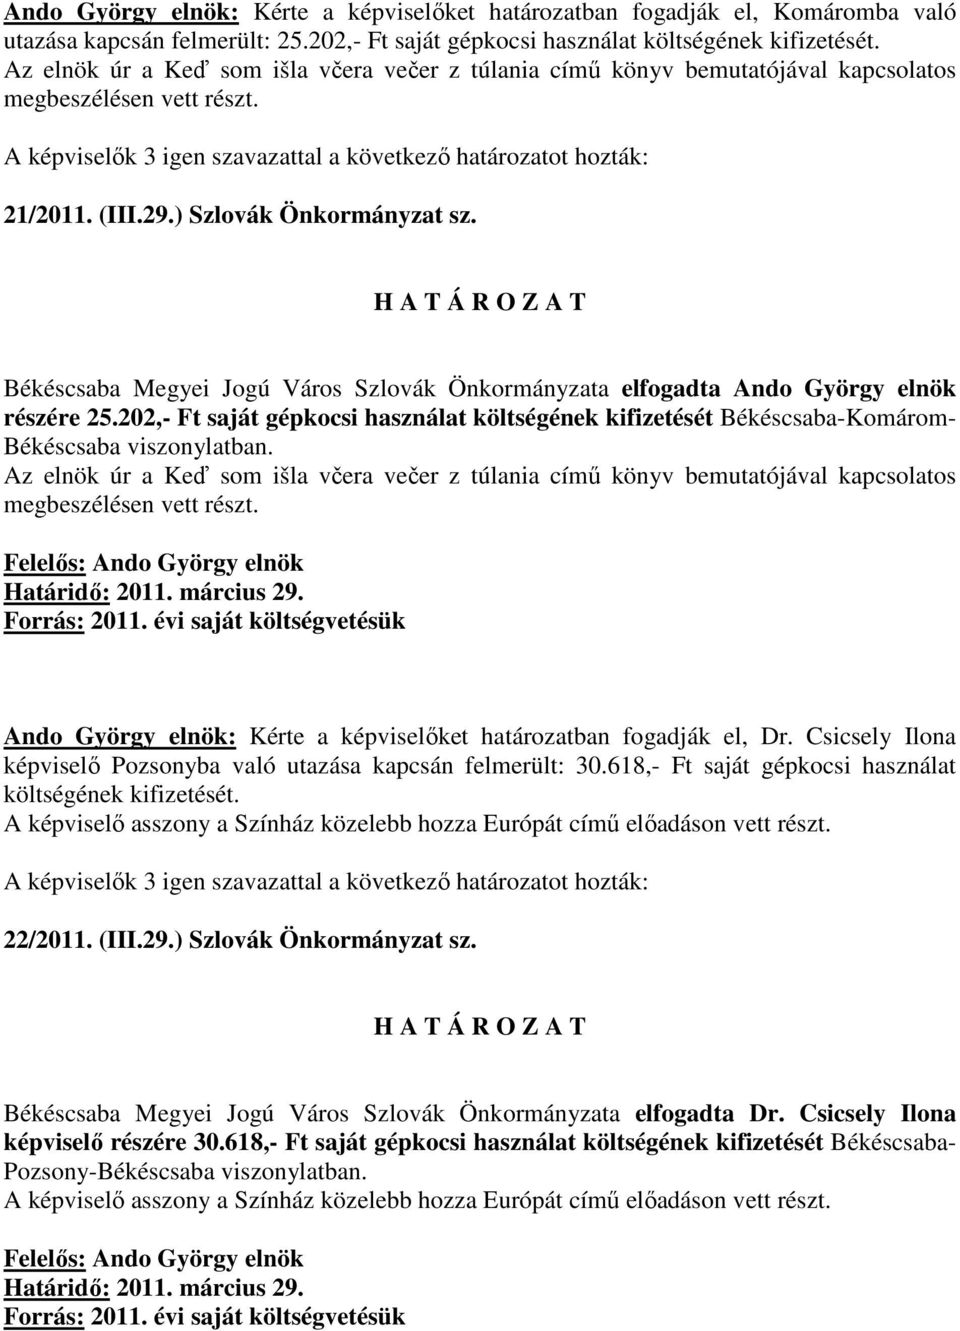 Békéscsaba Megyei Jogú Város Szlovák Önkormányzata elfogadta Ando György elnök részére 25.202,- Ft saját gépkocsi használat költségének kifizetését Békéscsaba-Komárom- Békéscsaba viszonylatban.